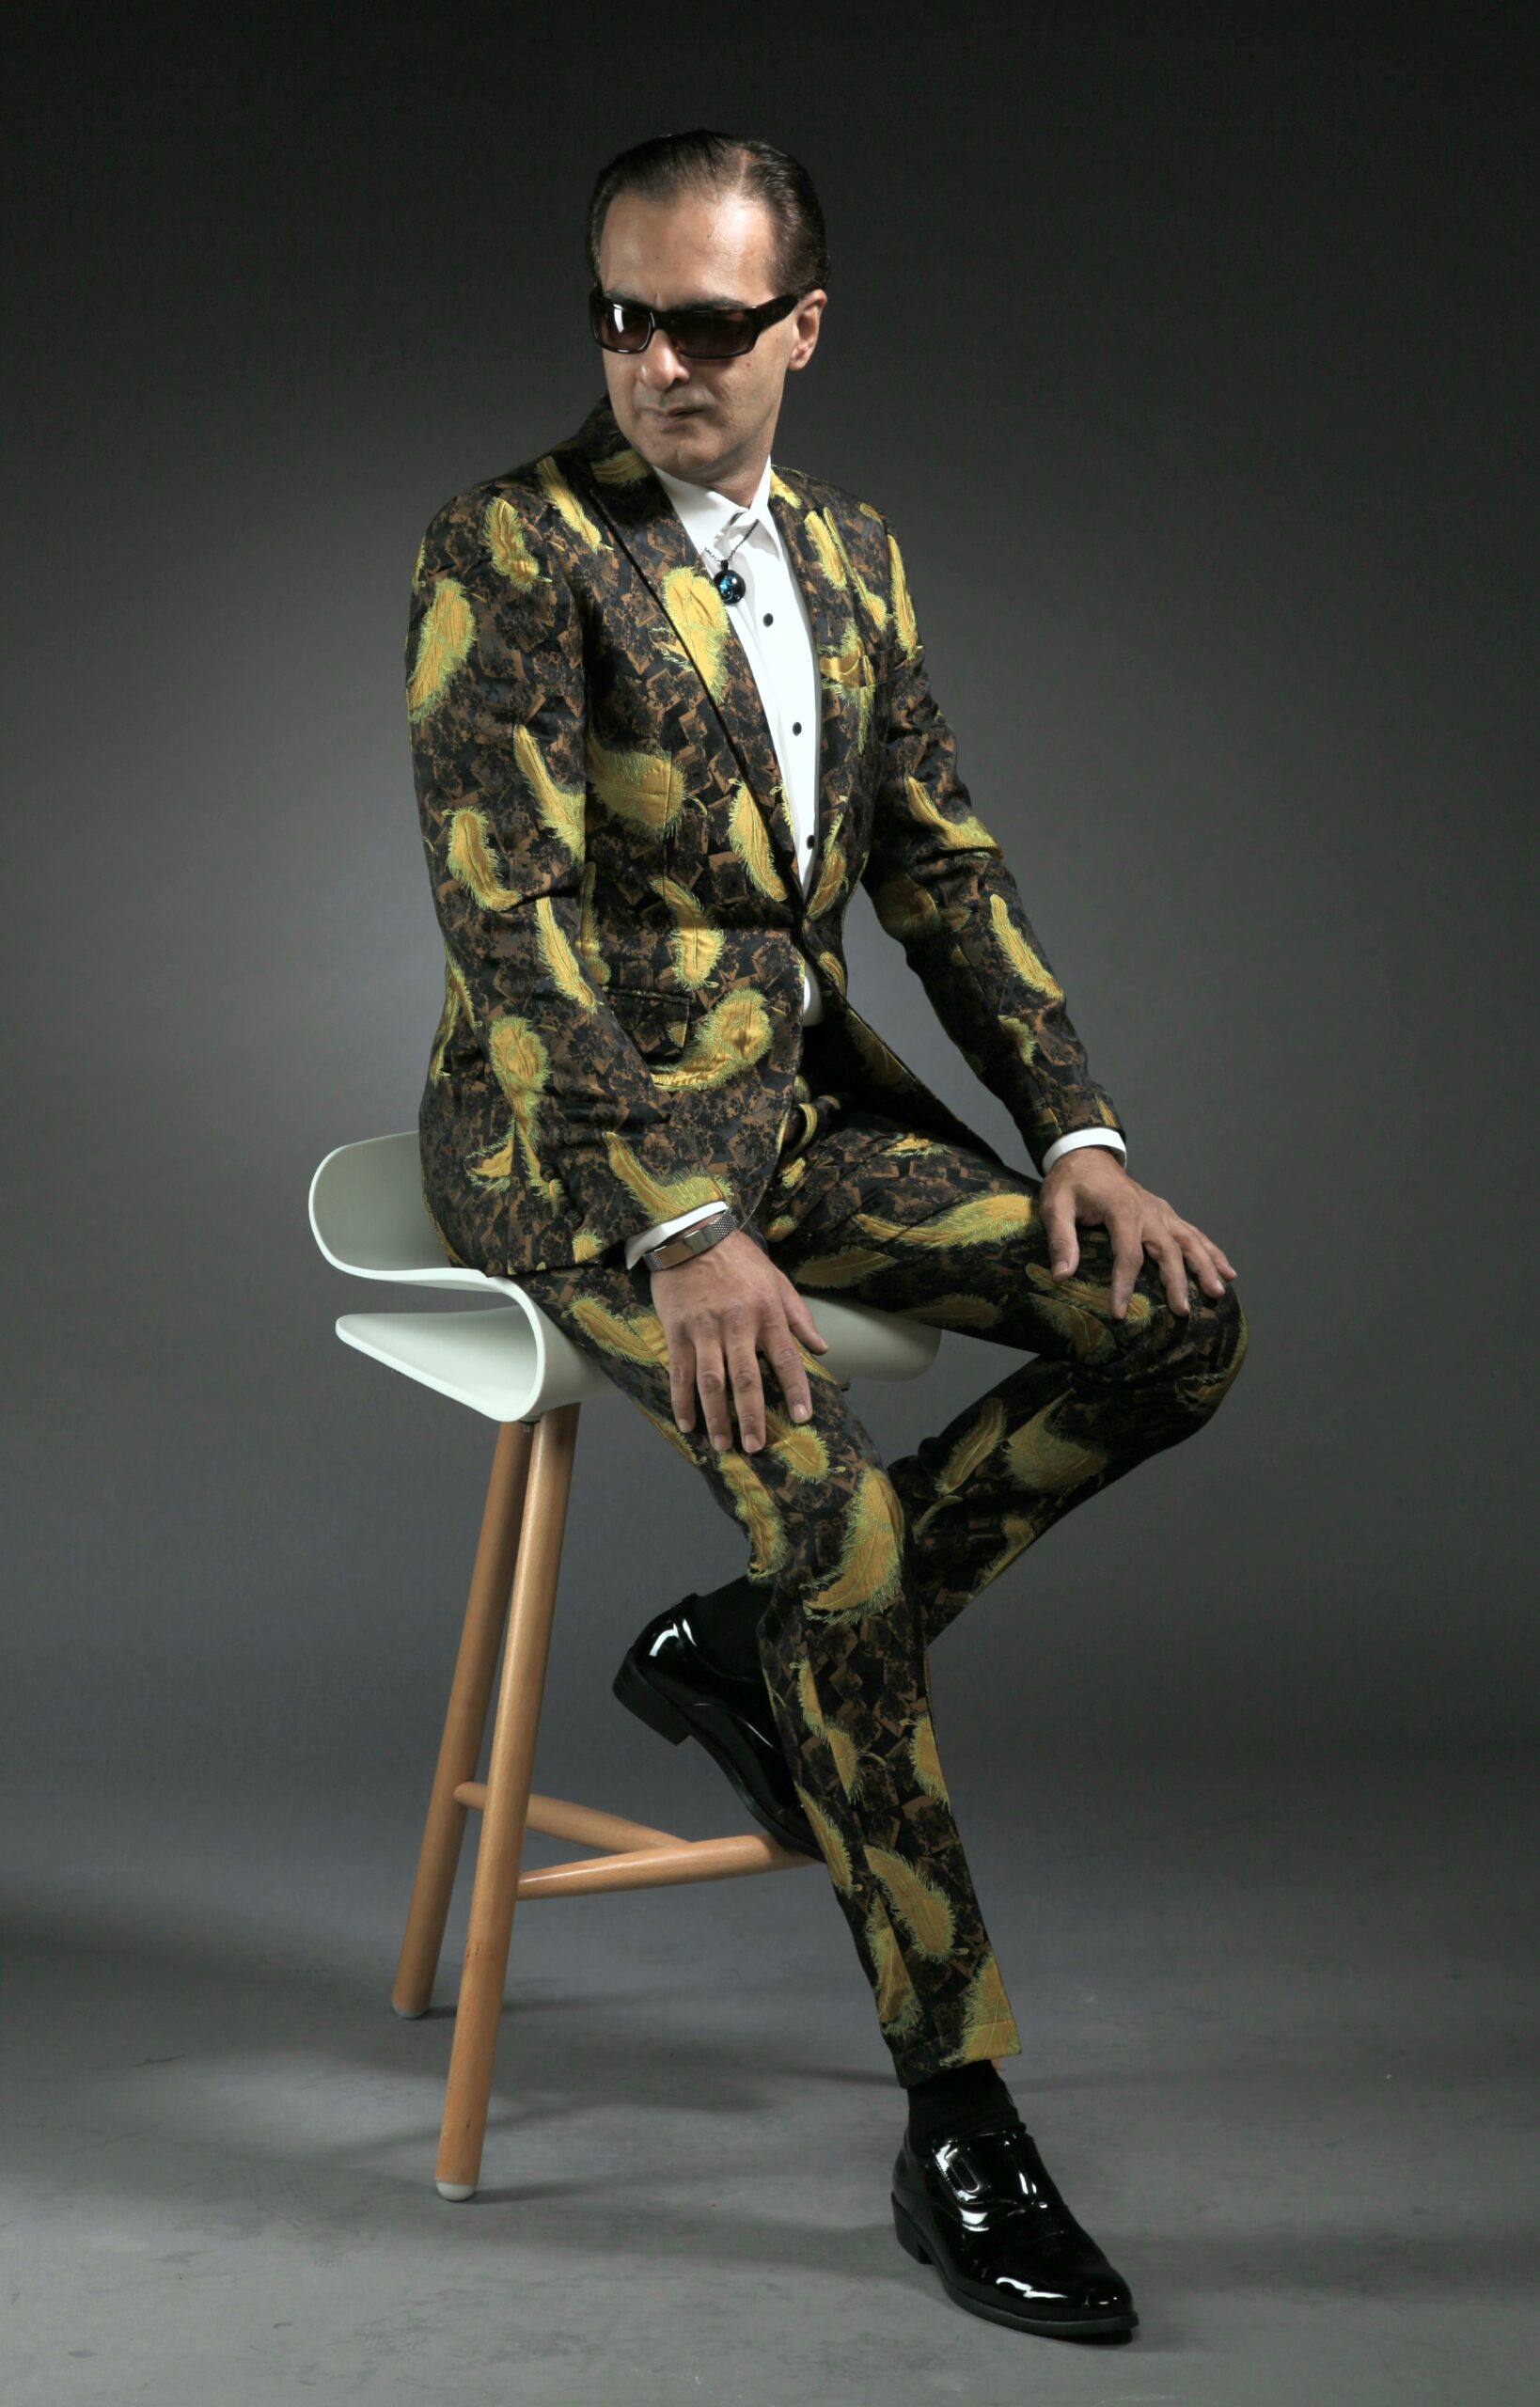 Mst 5016 02 Rent Rental Hire Tuxedo Suit Black Tie Suit Designer Suits Shop Tailor Tailors Singapore Wedding